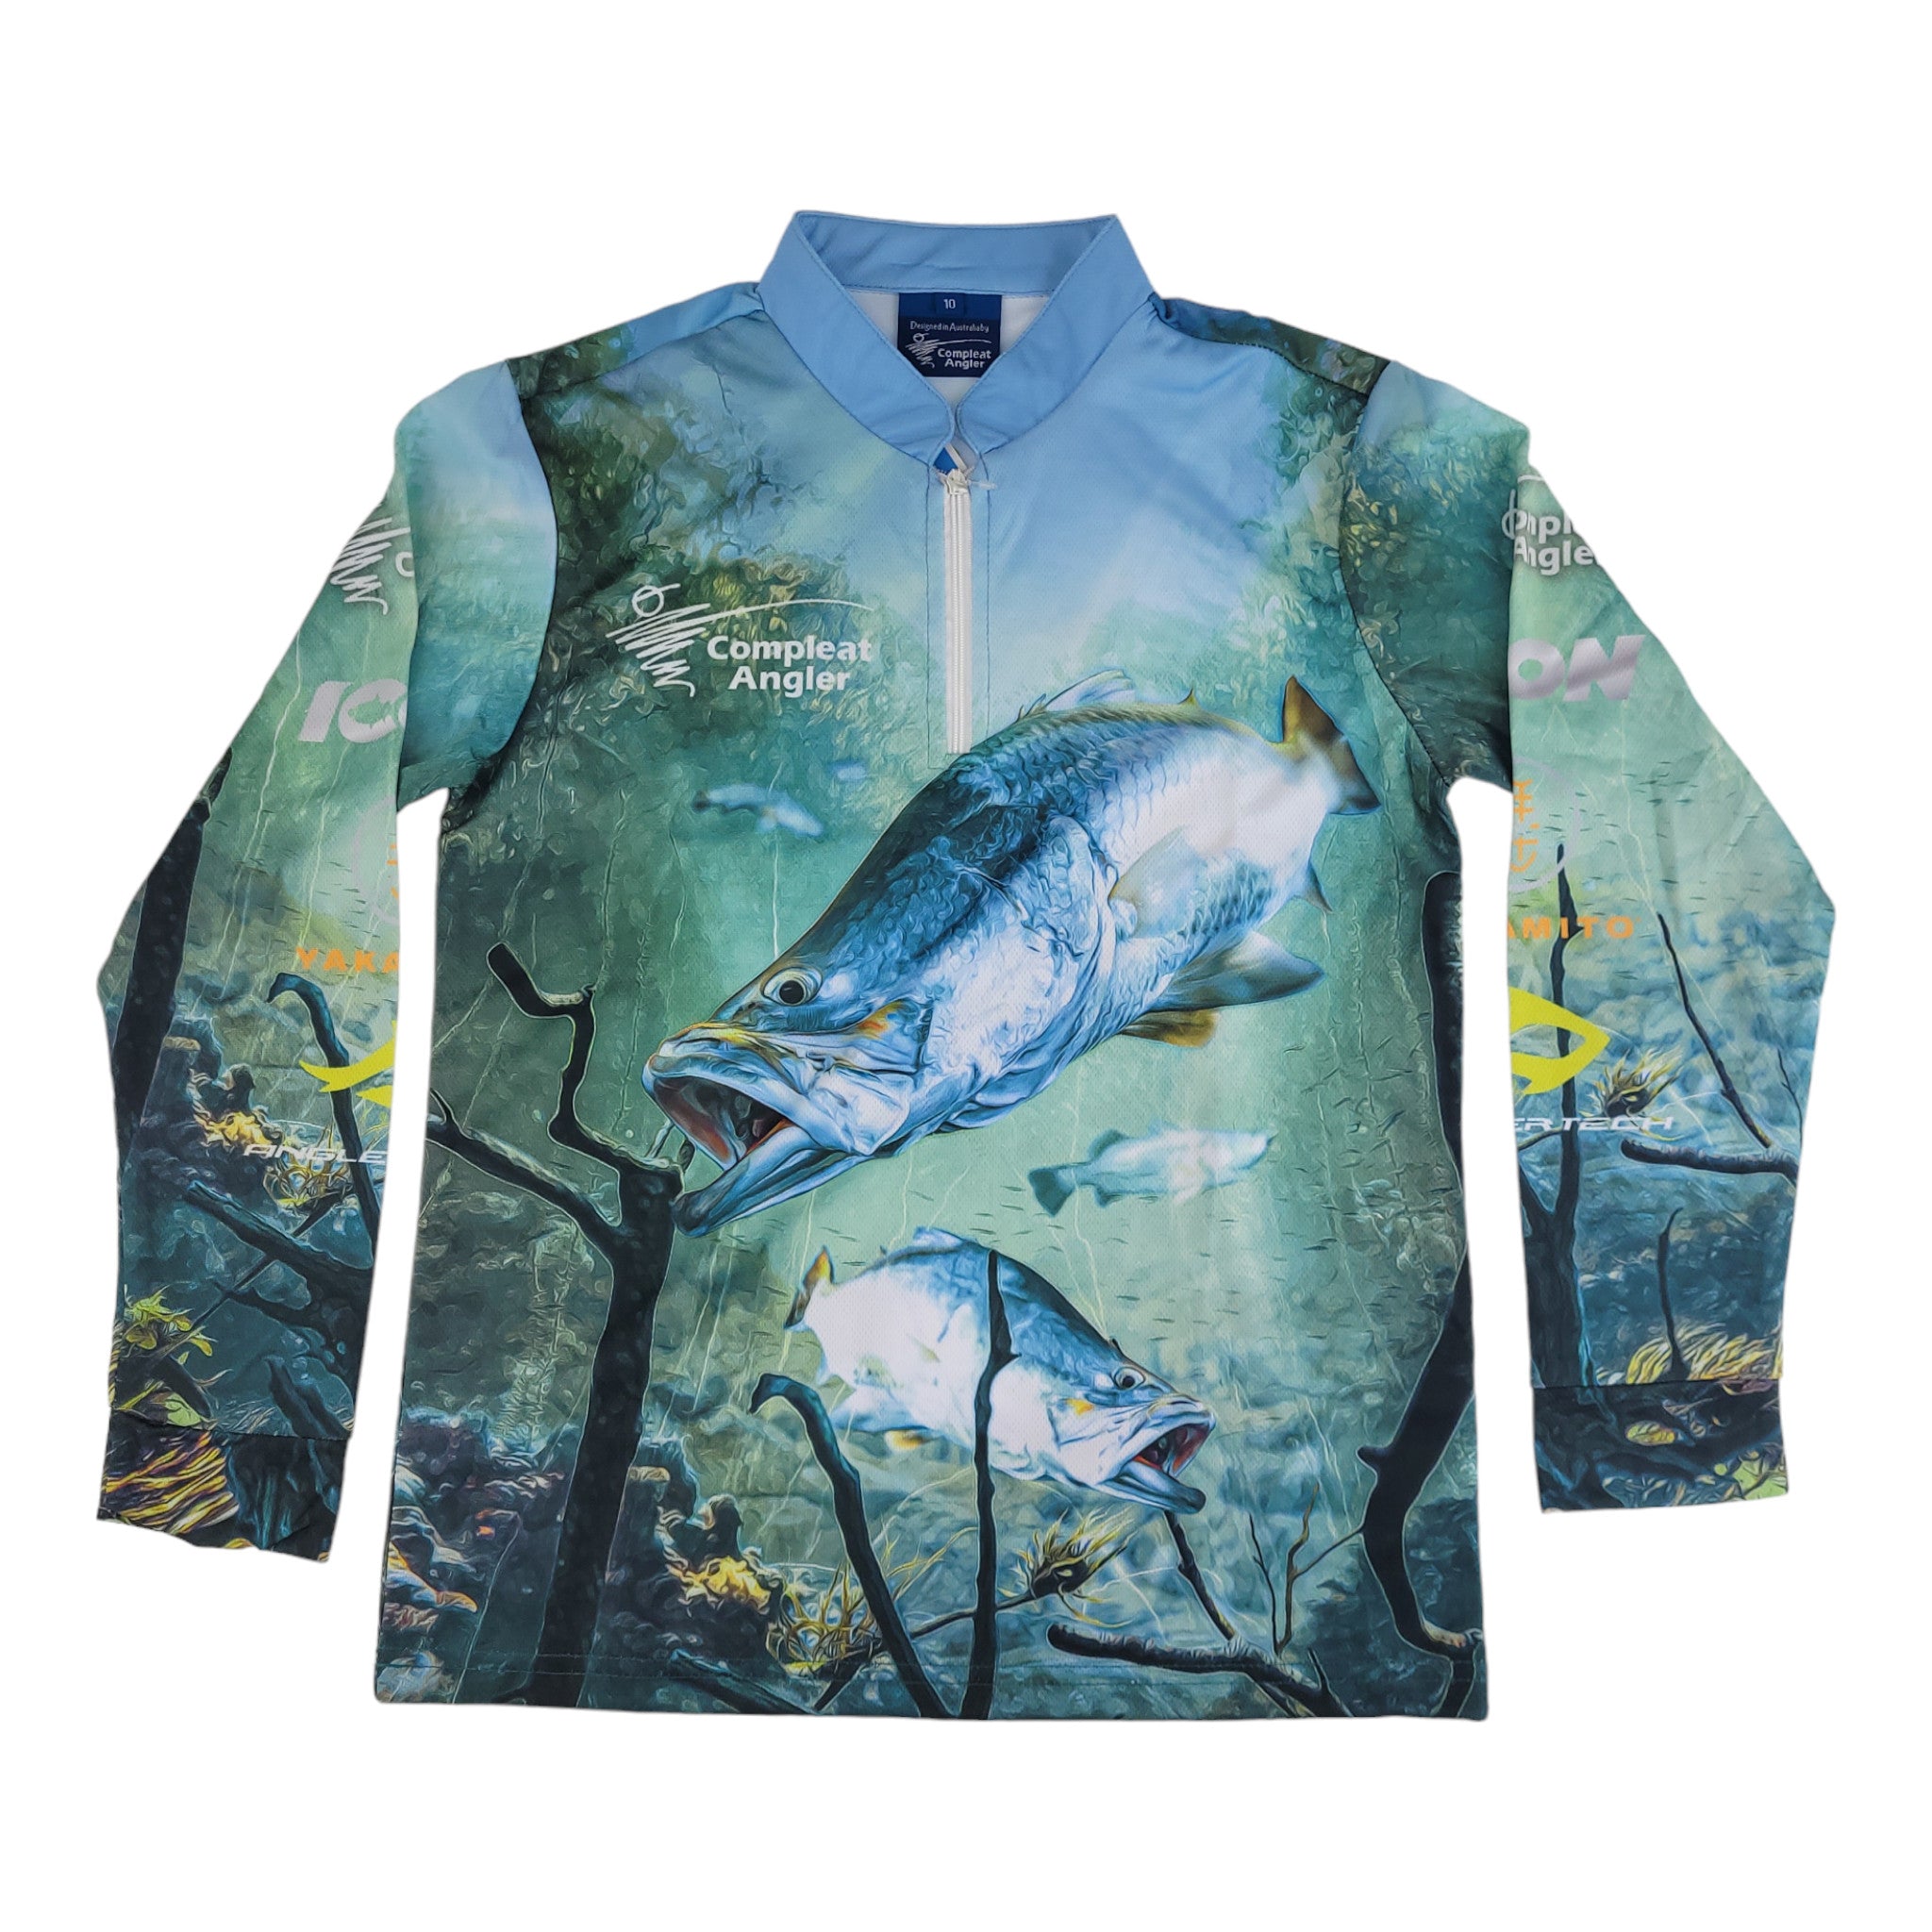 Compleat Angler Barra Kids Shirt